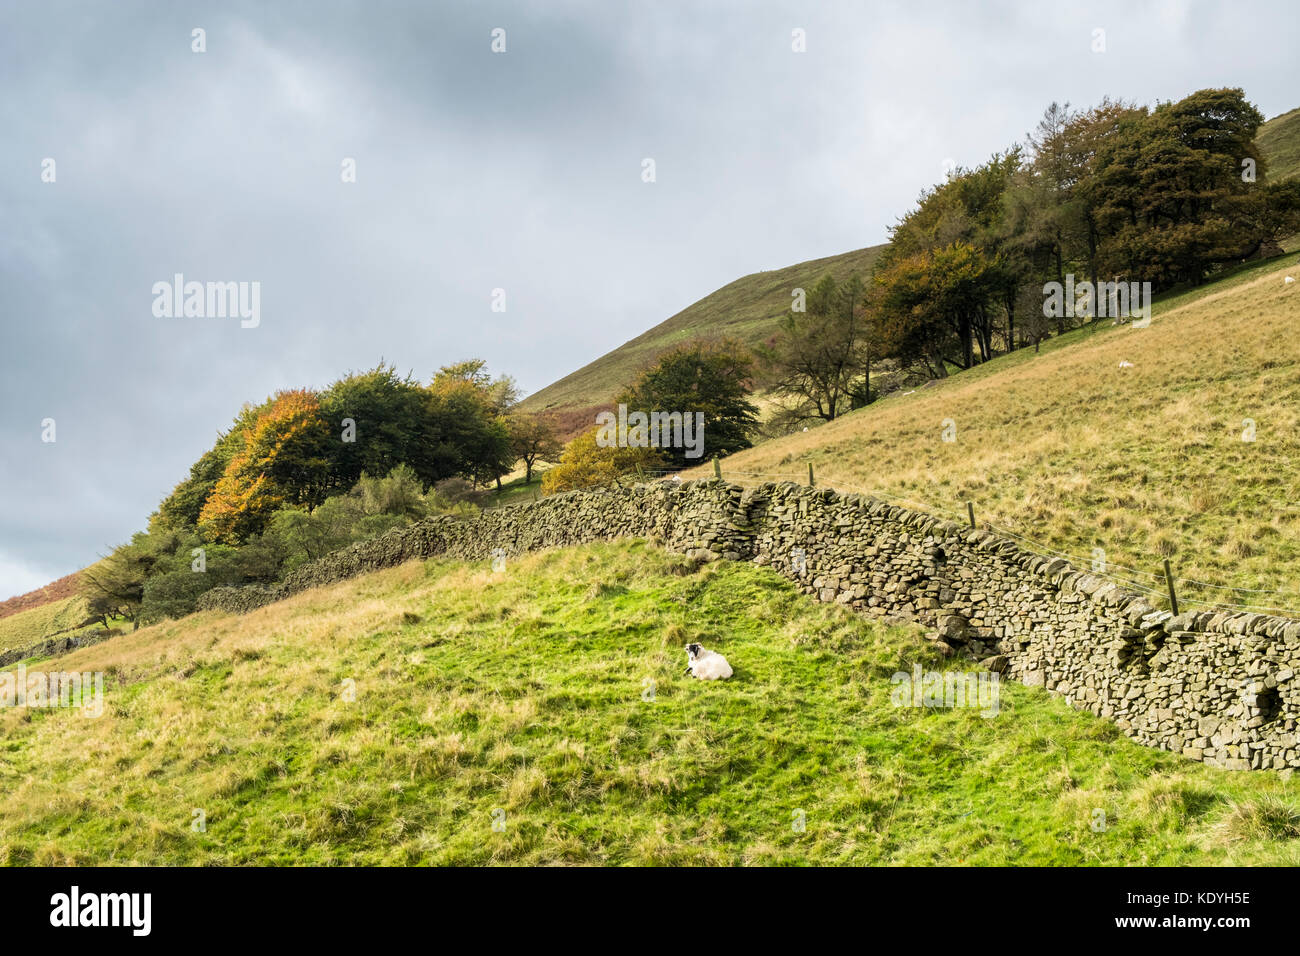 Derbyshire Landschaft im Herbst. Felder und Bäume am Hang des Broadlee Bank Tor, Alfreton, Derbyshire, Peak District National Park, England, Großbritannien Stockfoto